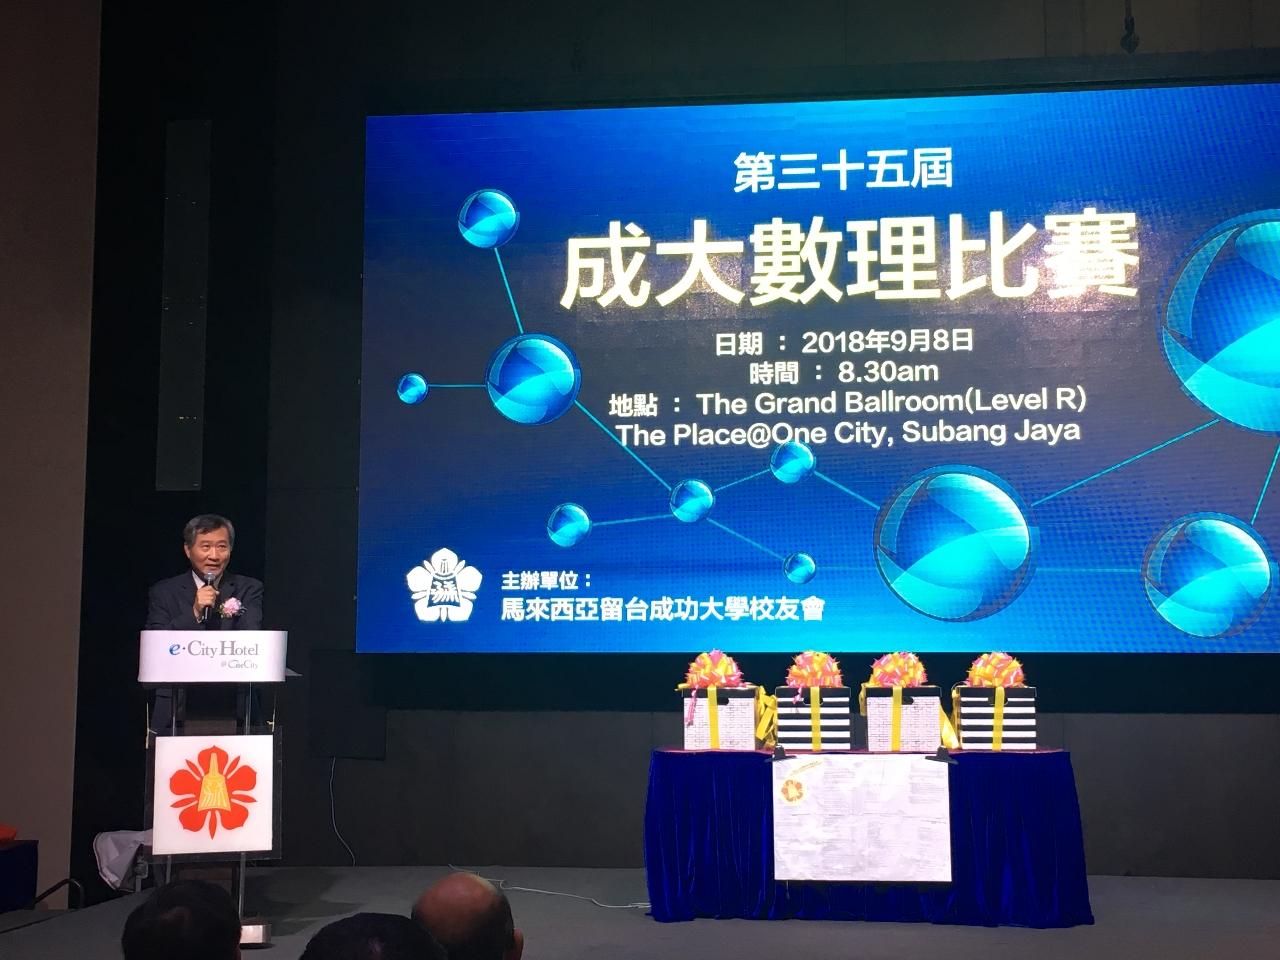 尹公使新垣(左1)出席馬來西亞留臺成功大學校友會「第三十五屆成大數理比賽」並致詞。
